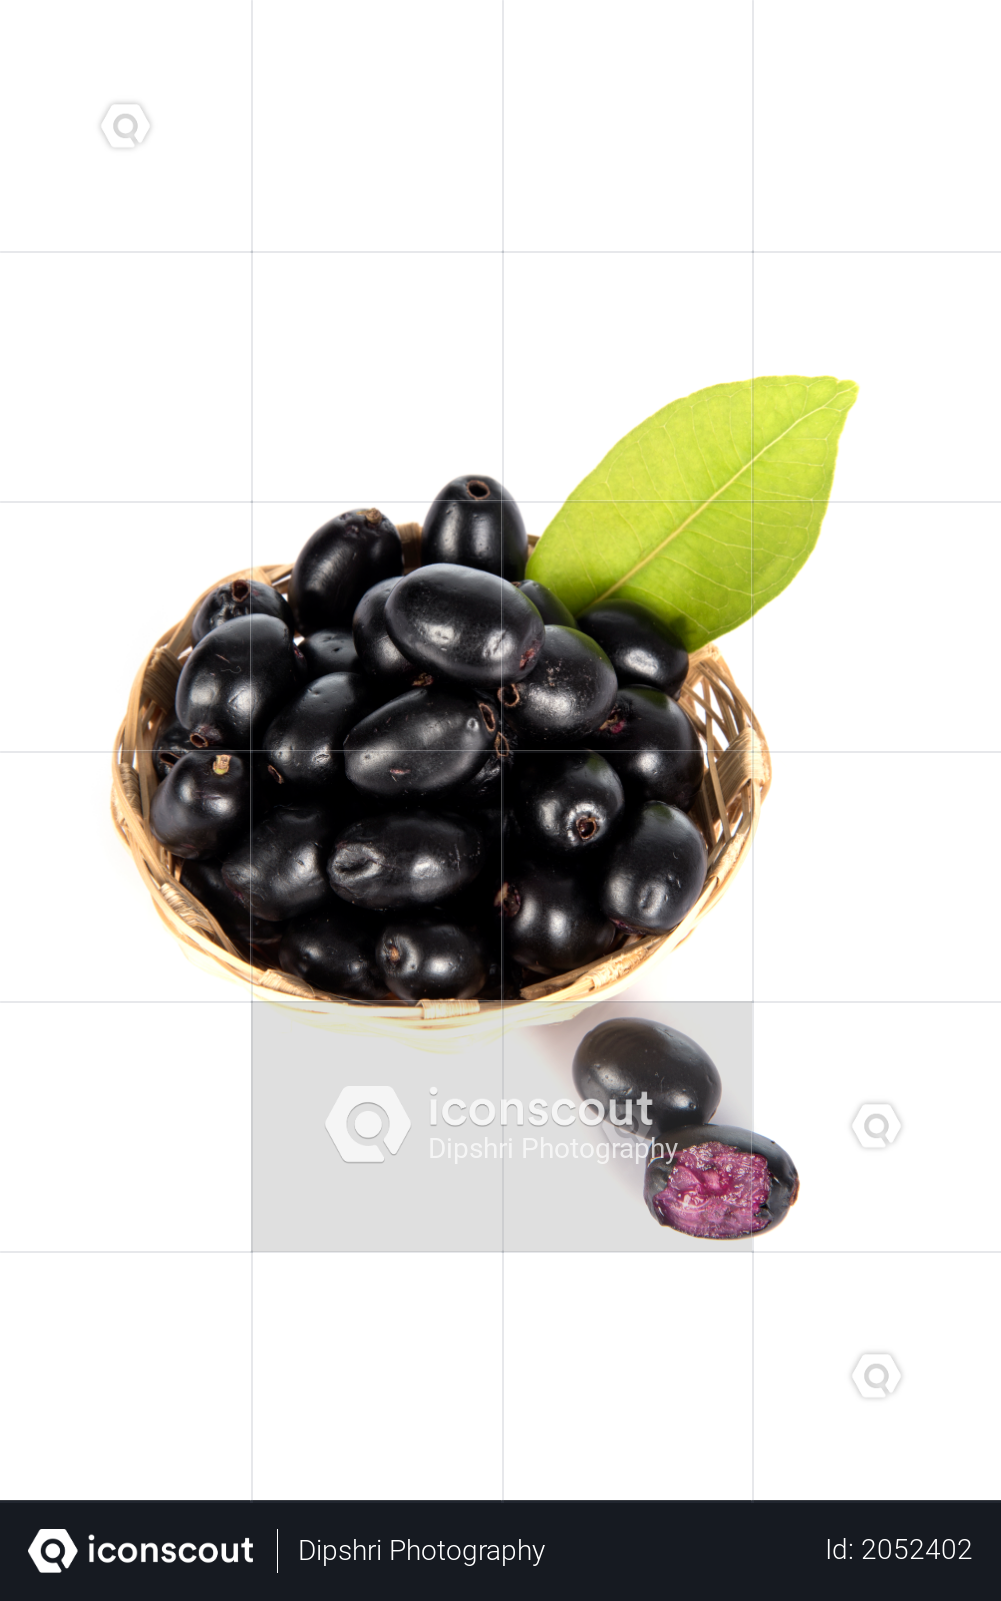 premium jamun fruit or java plum photo download in png jpg format premium jamun fruit or java plum photo download in png jpg format